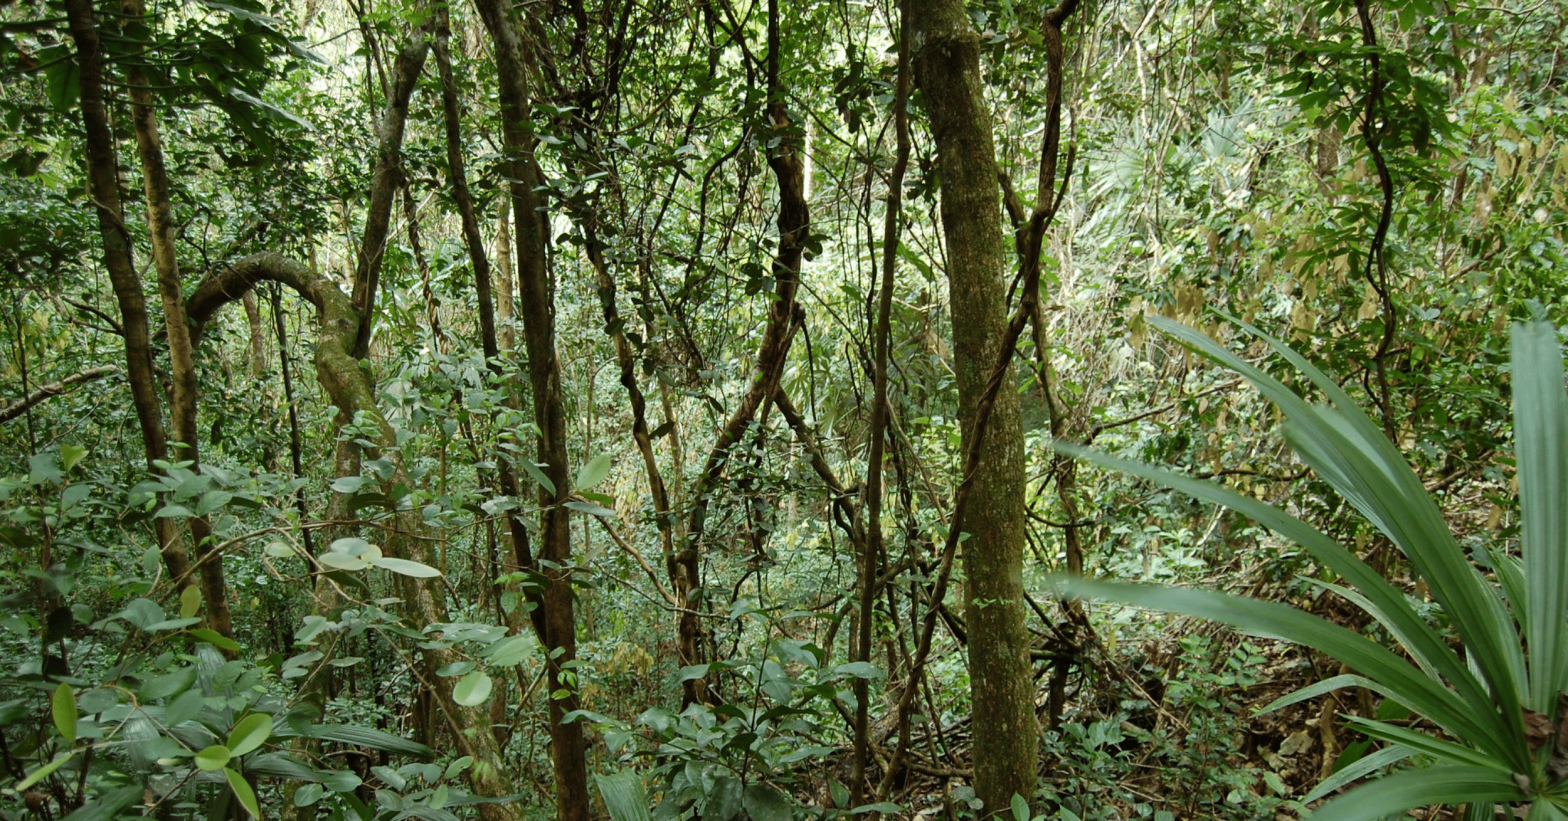 Belize rain forest. Image by Shoreline (Flickr)